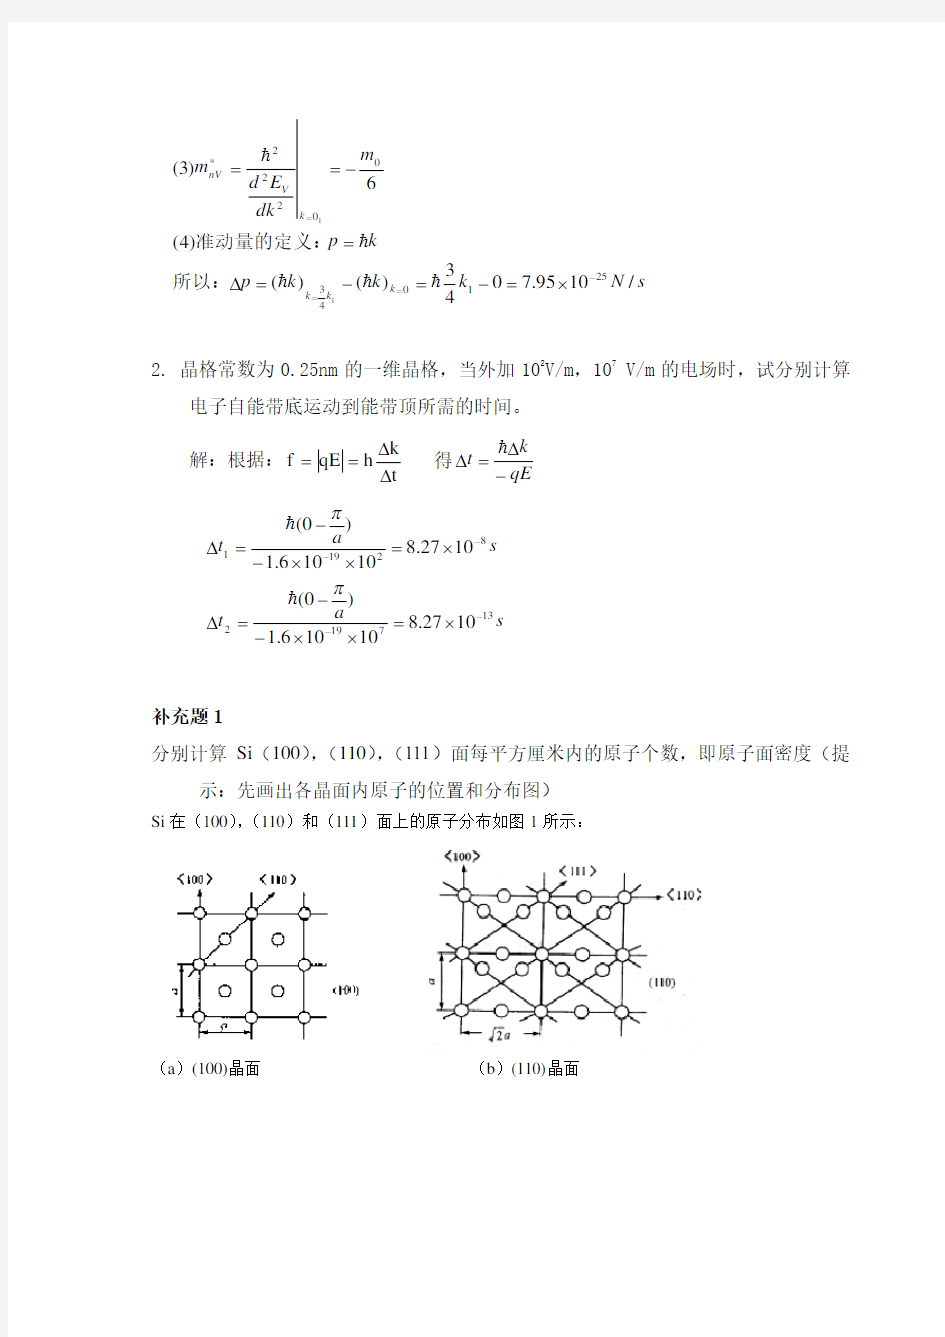 半导体物理学(刘恩科第七版)课后习题解第一章习题及答案